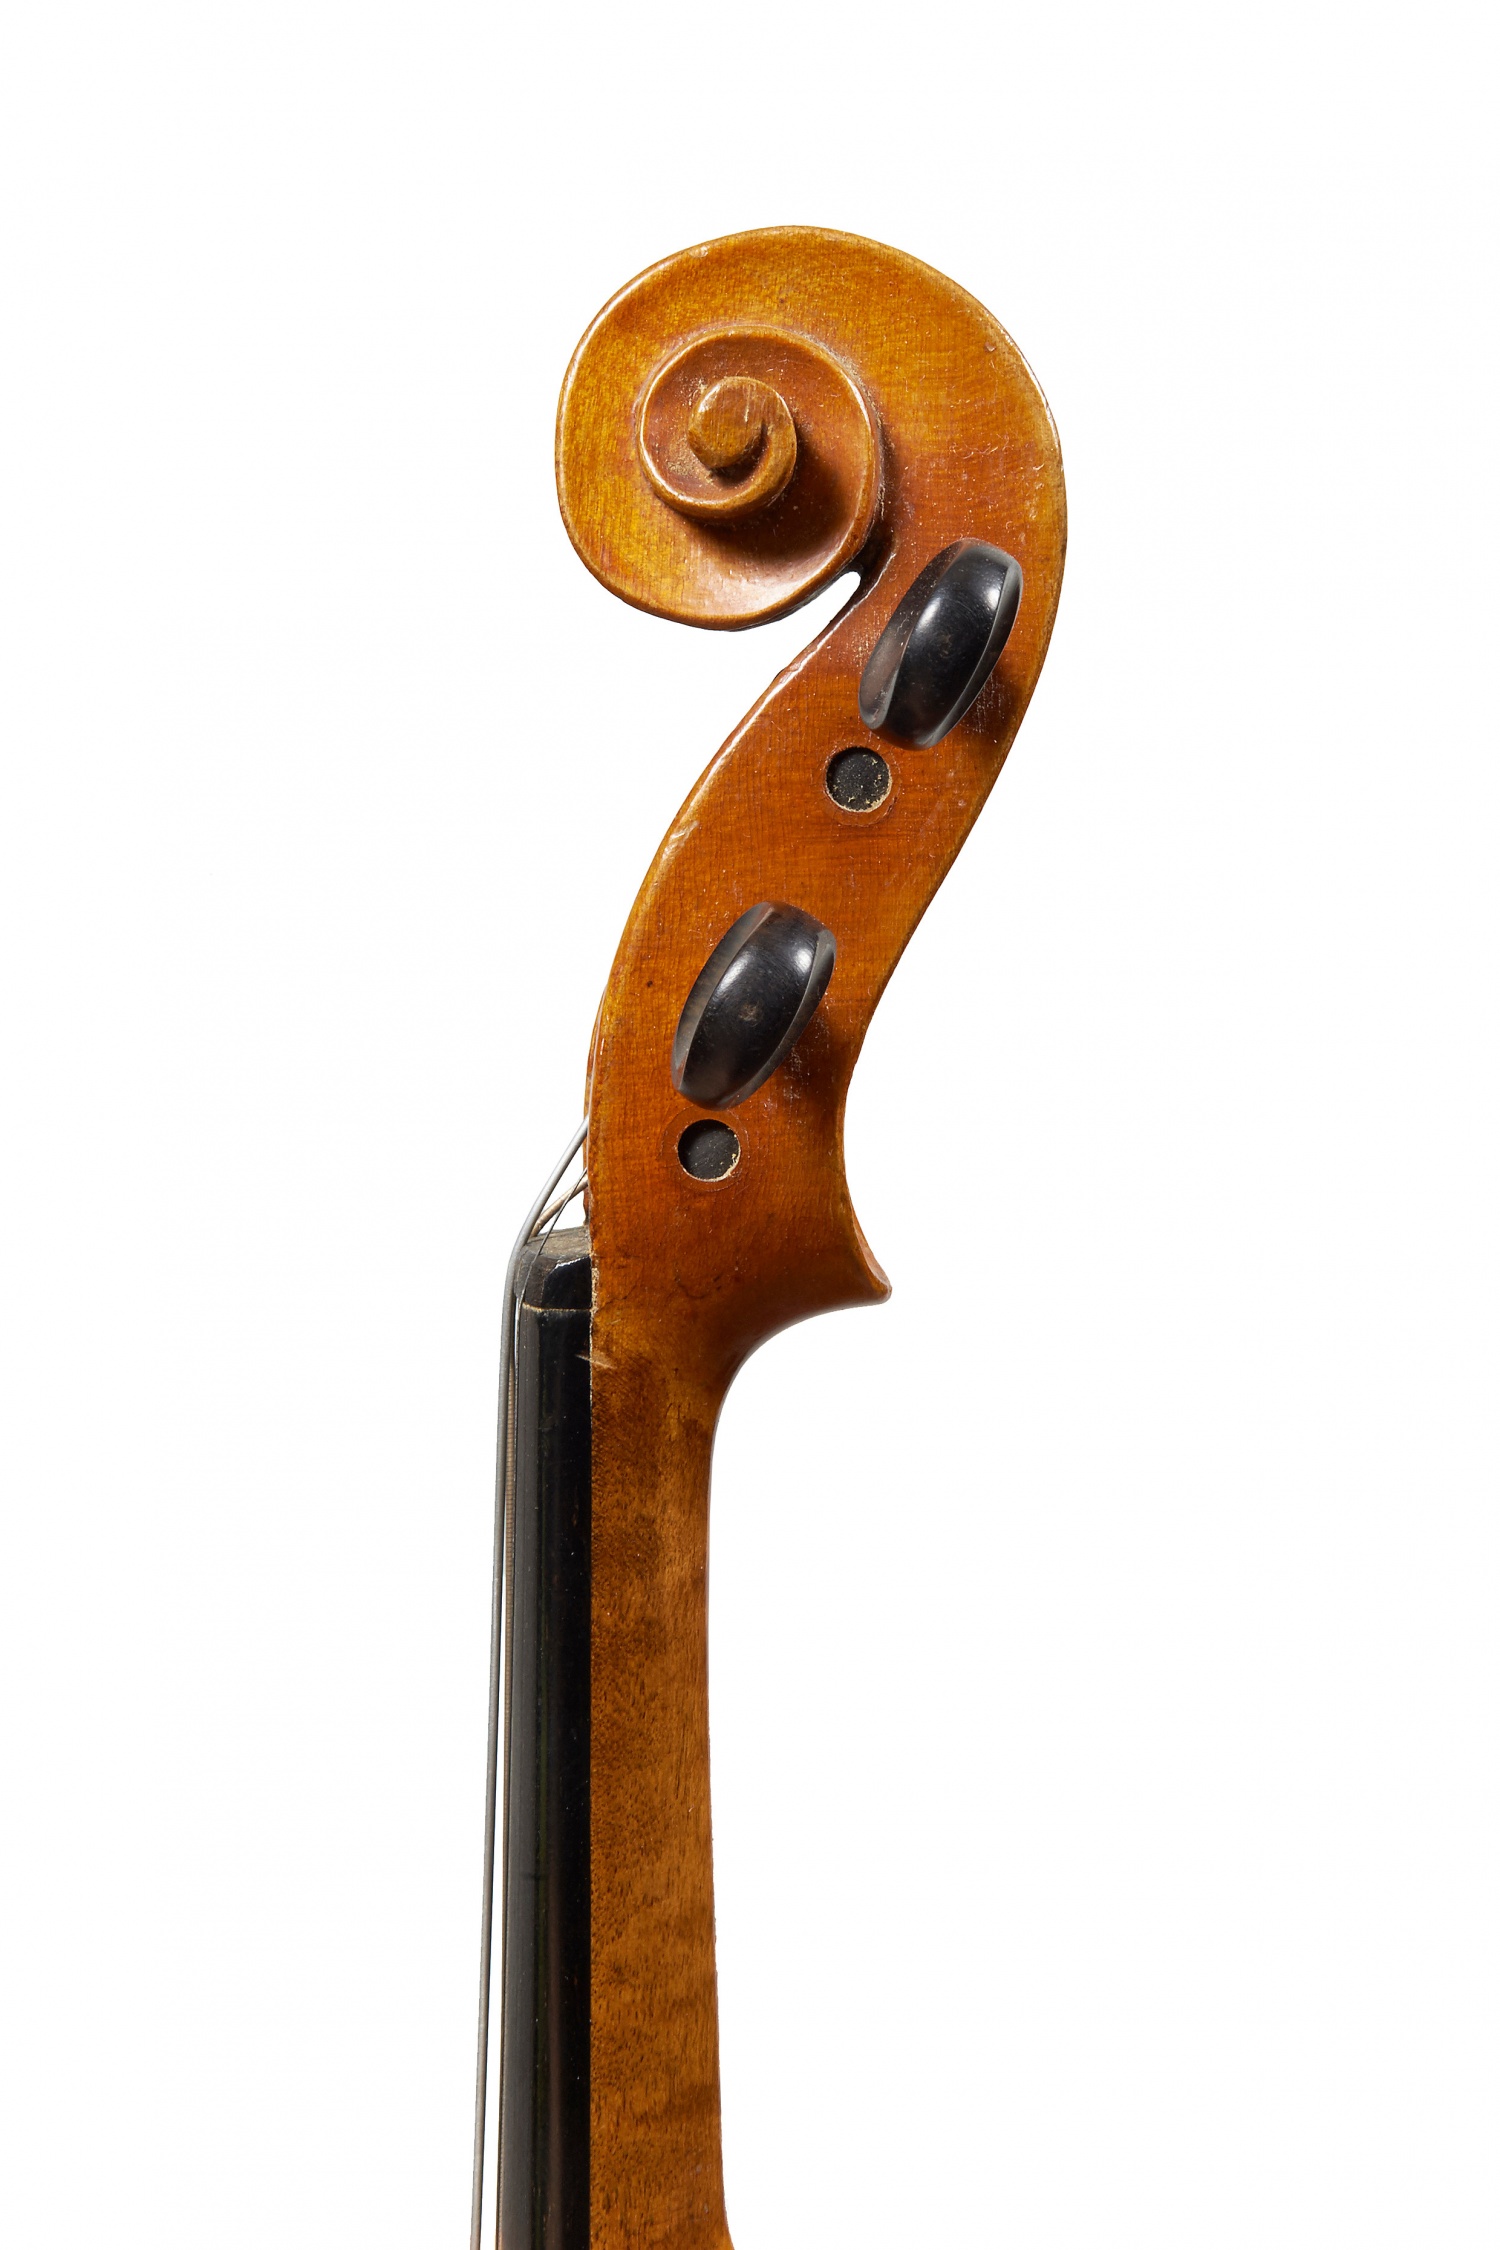 Violon Francois Breton M° la duchesse Mirecourt 1831 estampillés Violin stamped 